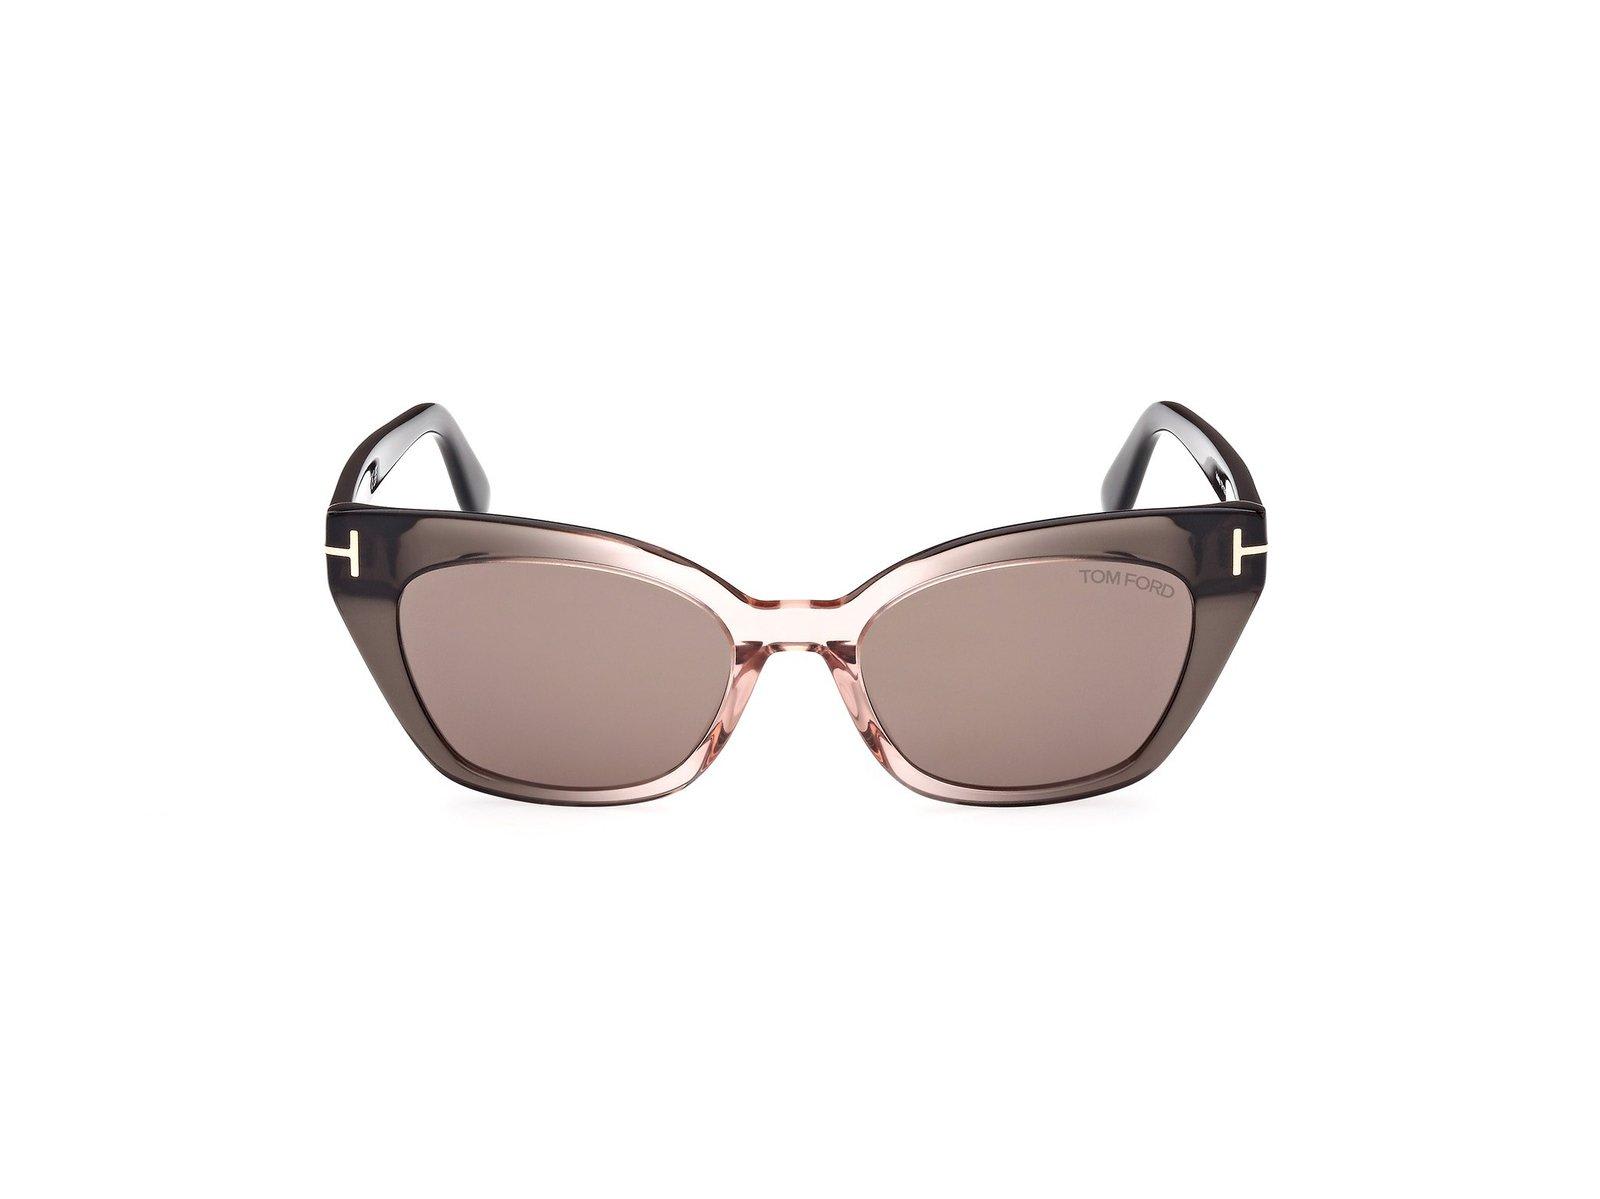 Tom Ford Cat-eye Frame Sunglasses In Gray